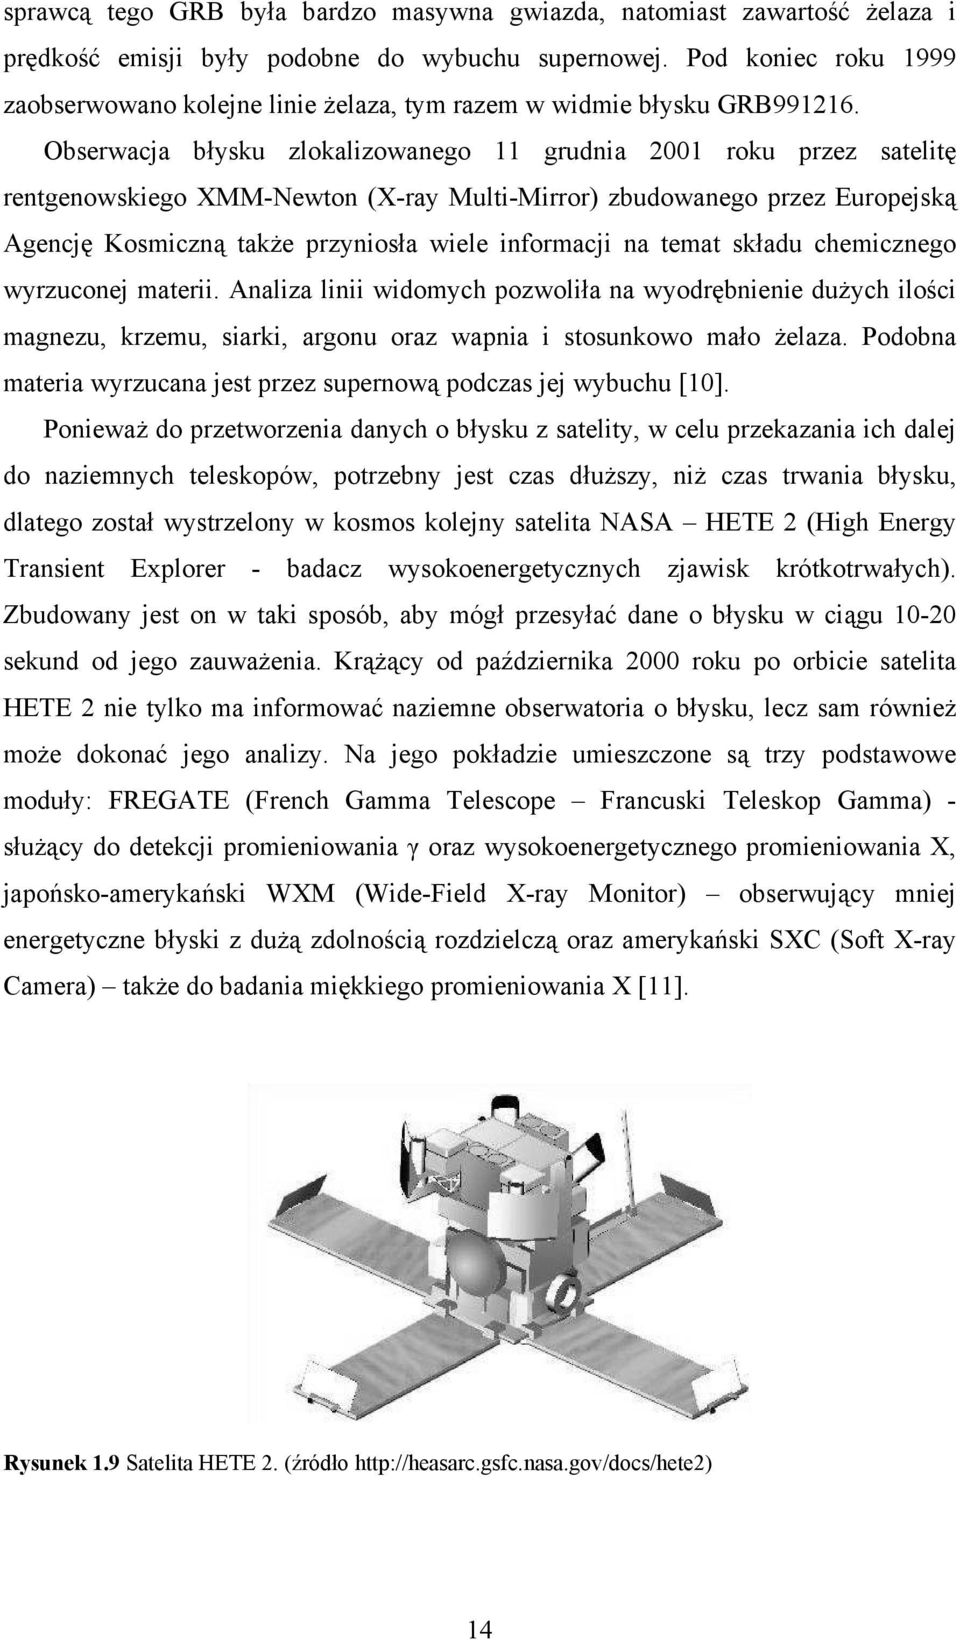 Obserwacja błysku zlokalizowanego 11 grudnia 2001 roku przez satelitę rentgenowskiego XMM-Newton (X-ray Multi-Mirror) zbudowanego przez Europejską Agencję Kosmiczną także przyniosła wiele informacji